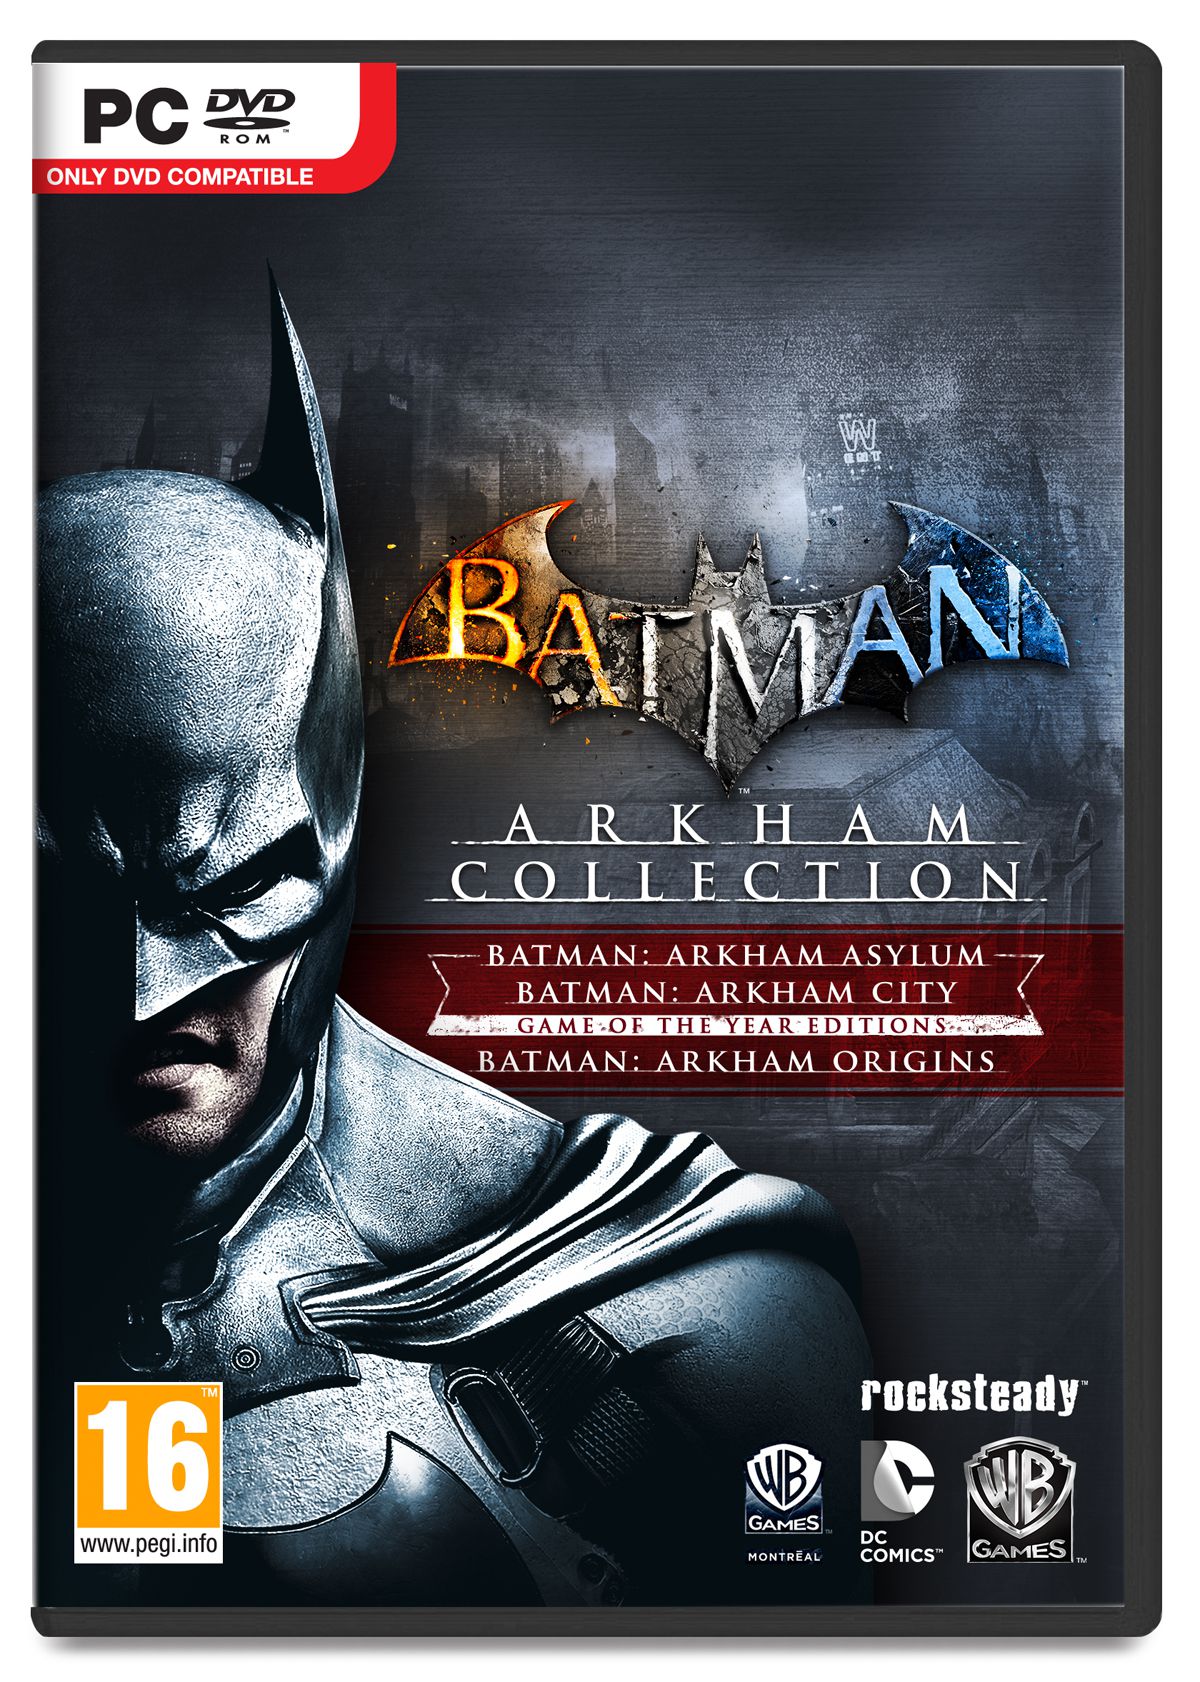 Batman: Arkham Collection (2009 – 2011)